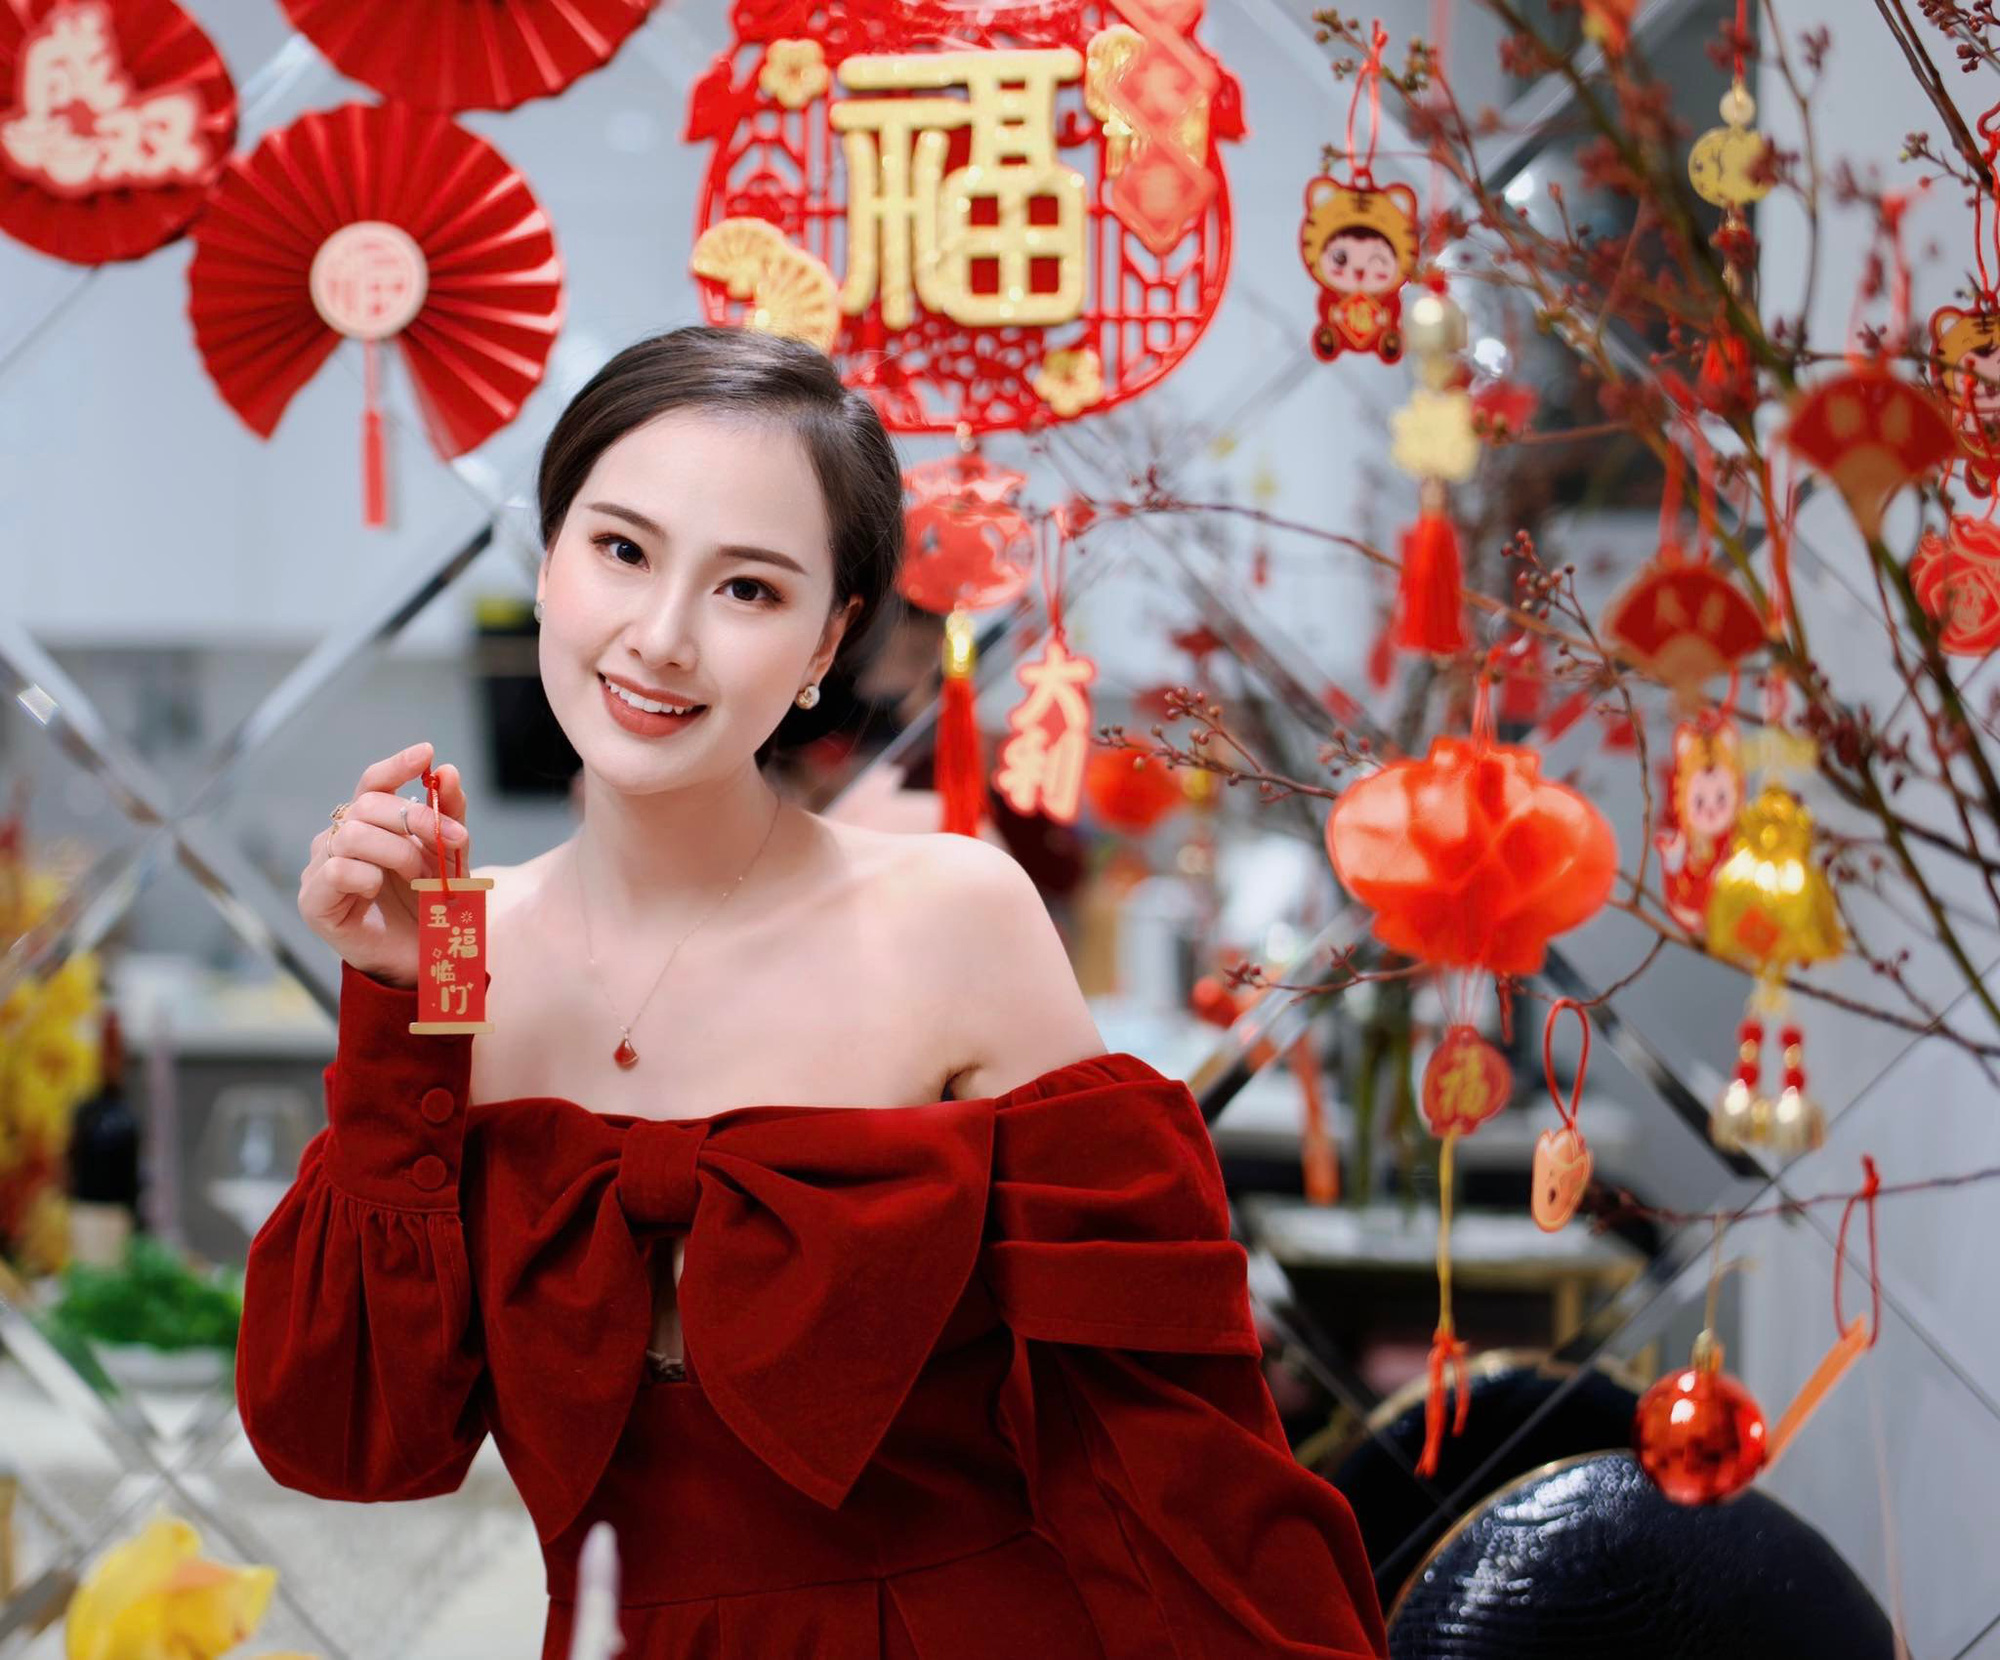 5 năm ăn Tết xa nhà của cô dâu Việt xinh đẹp ở Trung Quốc